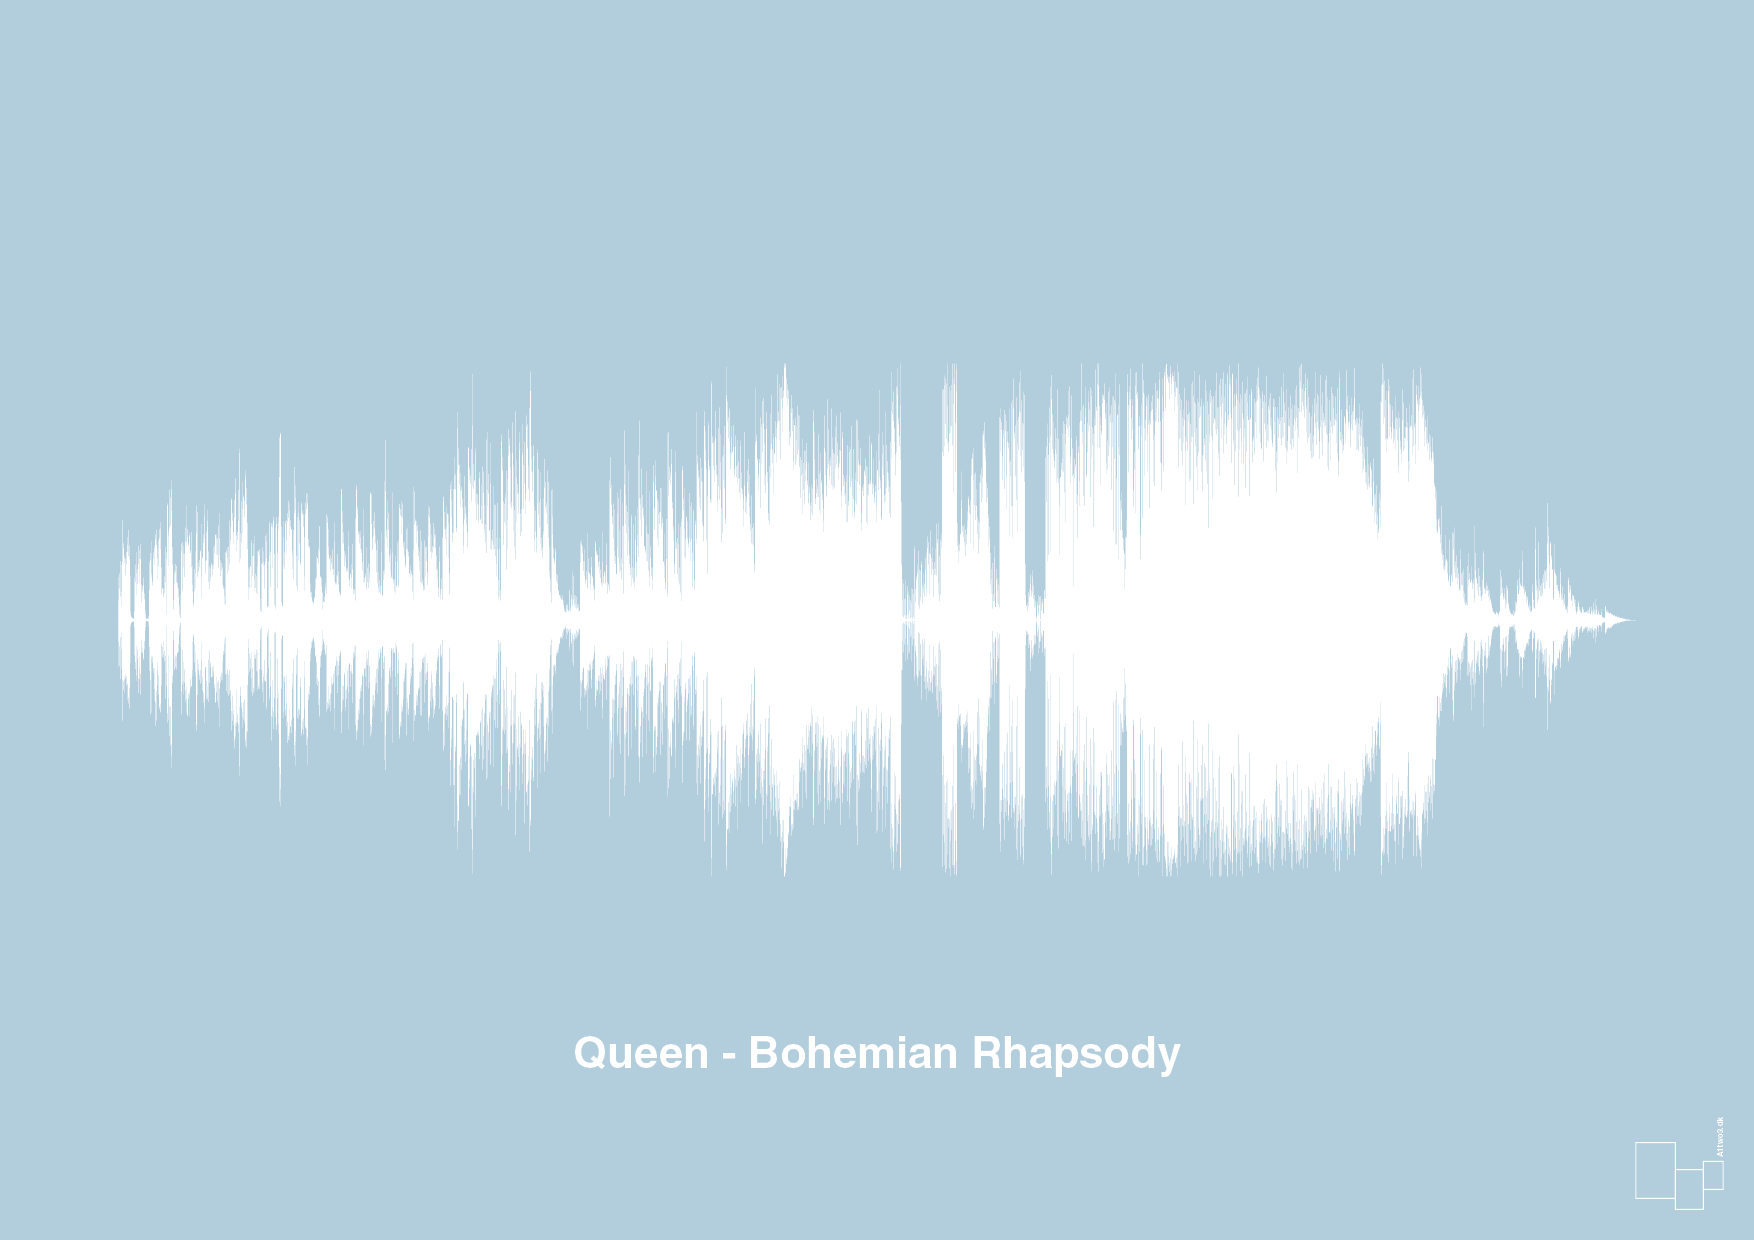 queen - bohemian rhapsody - Plakat med Musik i Heavenly Blue